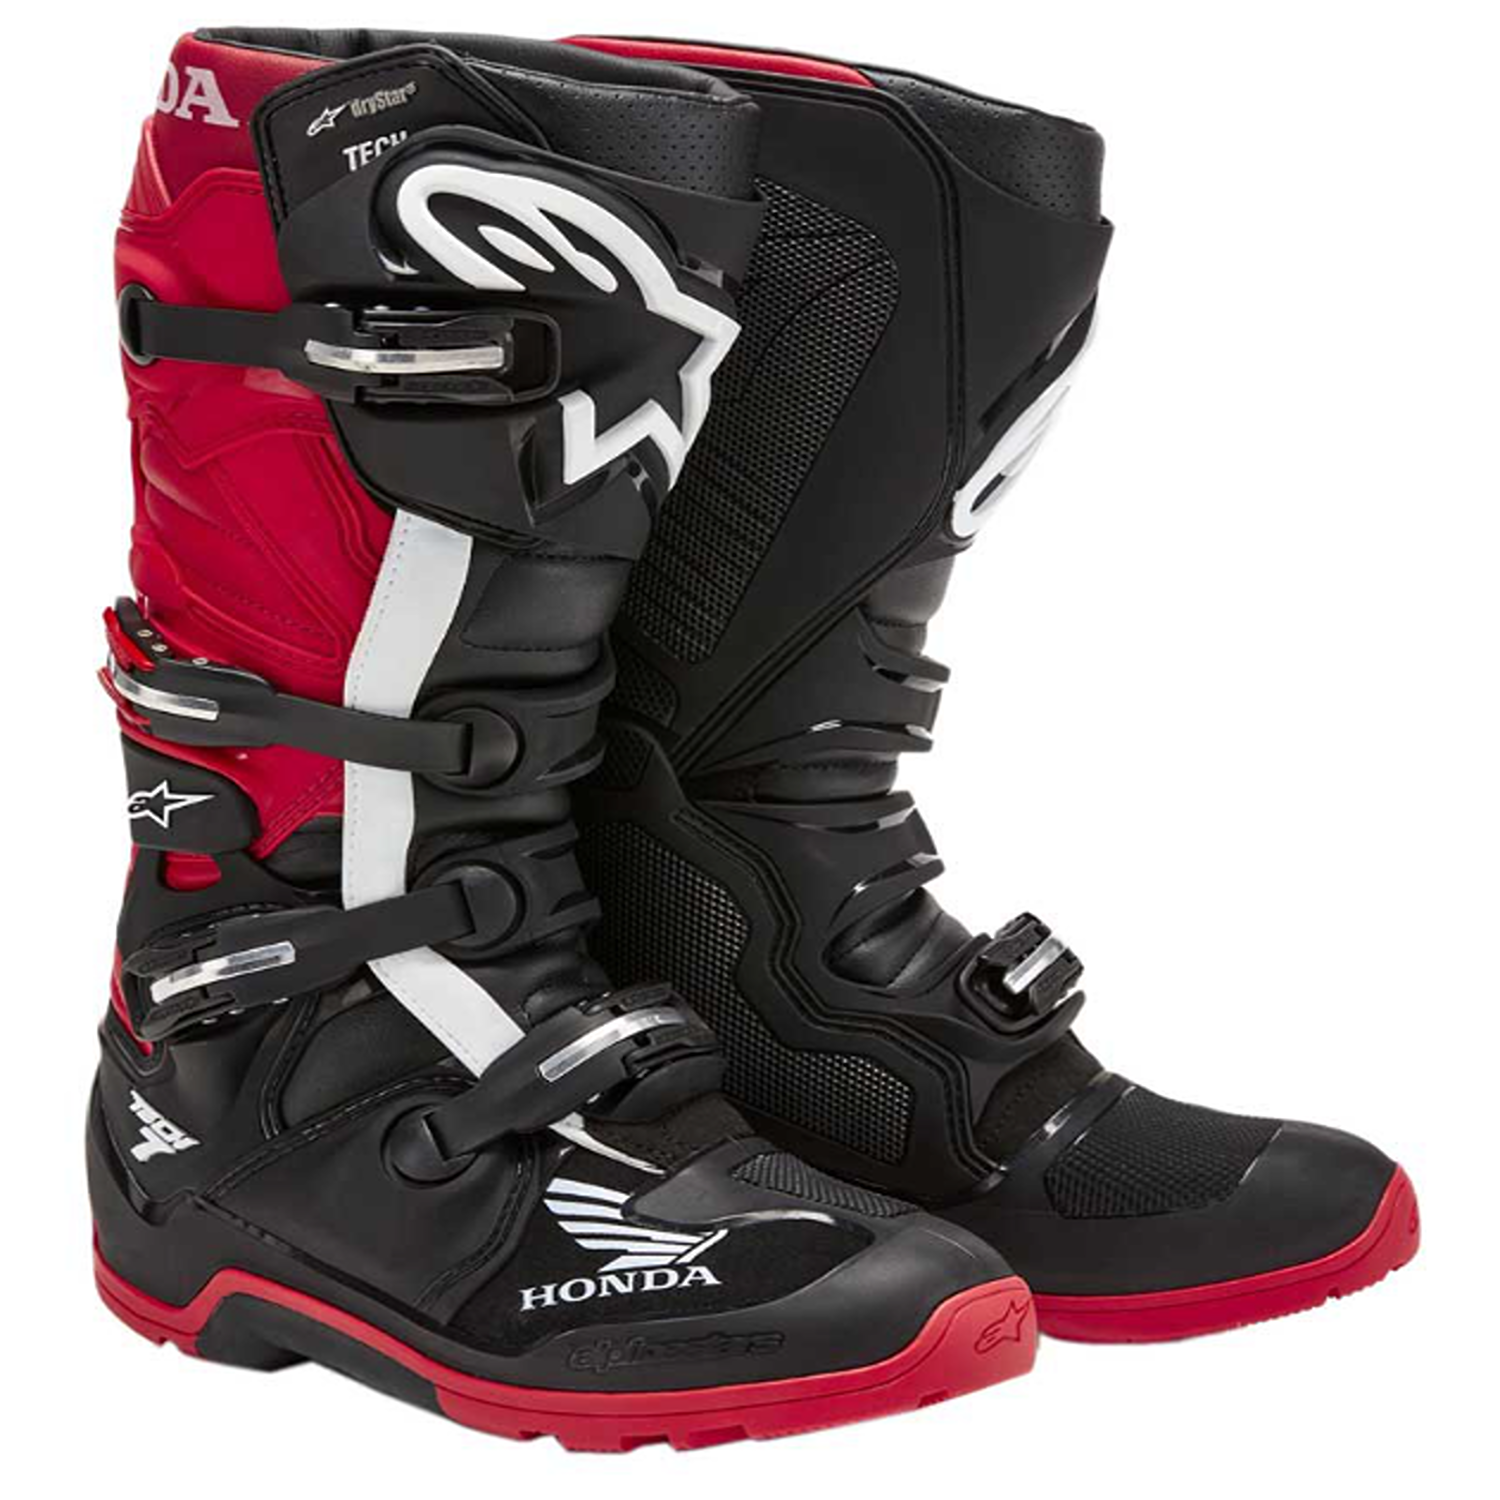 Image of Alpinestars Honda Tech 7 Enduro Drystar Boots Black Bright Red Talla US 8